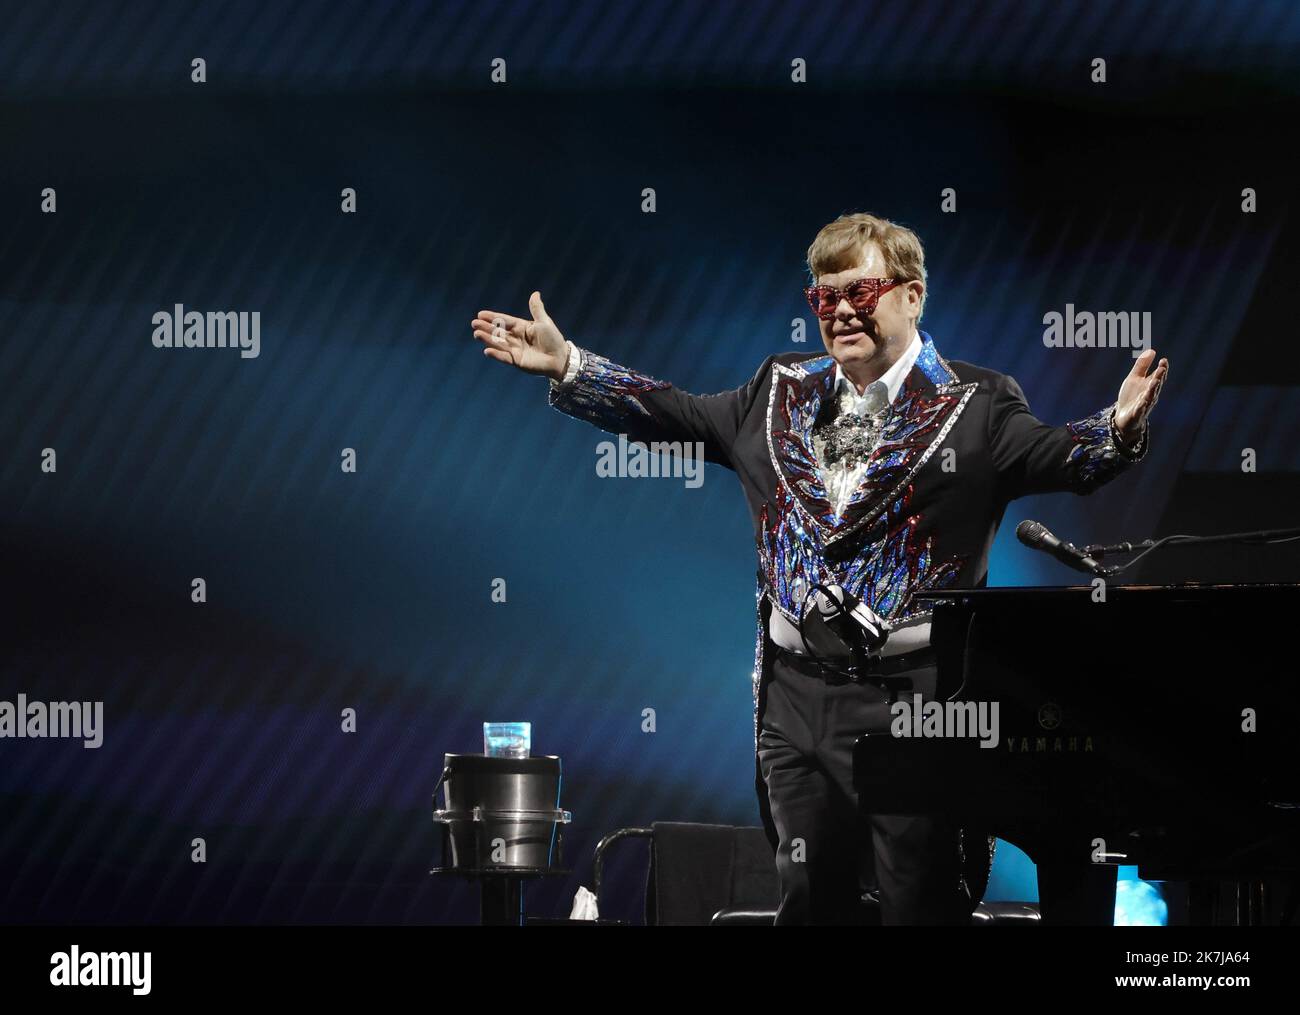 ©PHOTOPQR/LE PARISIEN/Olivier Lejeune ; LA DEFENSE ; 11/06/2022 ; ELTON JOHN, ULTIME CONCERT EN FRANCE A PARIS LA DEFENSE ARENA, LES 11 ET 12 JUIN 2022 ! Elton John est ravi d'annoncer les dernières dates de son mythique spectacle « Elton John Farewell Yellow Brick Road : The Final Tour » au Royaume-Uni, Europe et en Amérique du nord. Elton John performing during a concert in Paris on June 11, 2022 Stock Photo